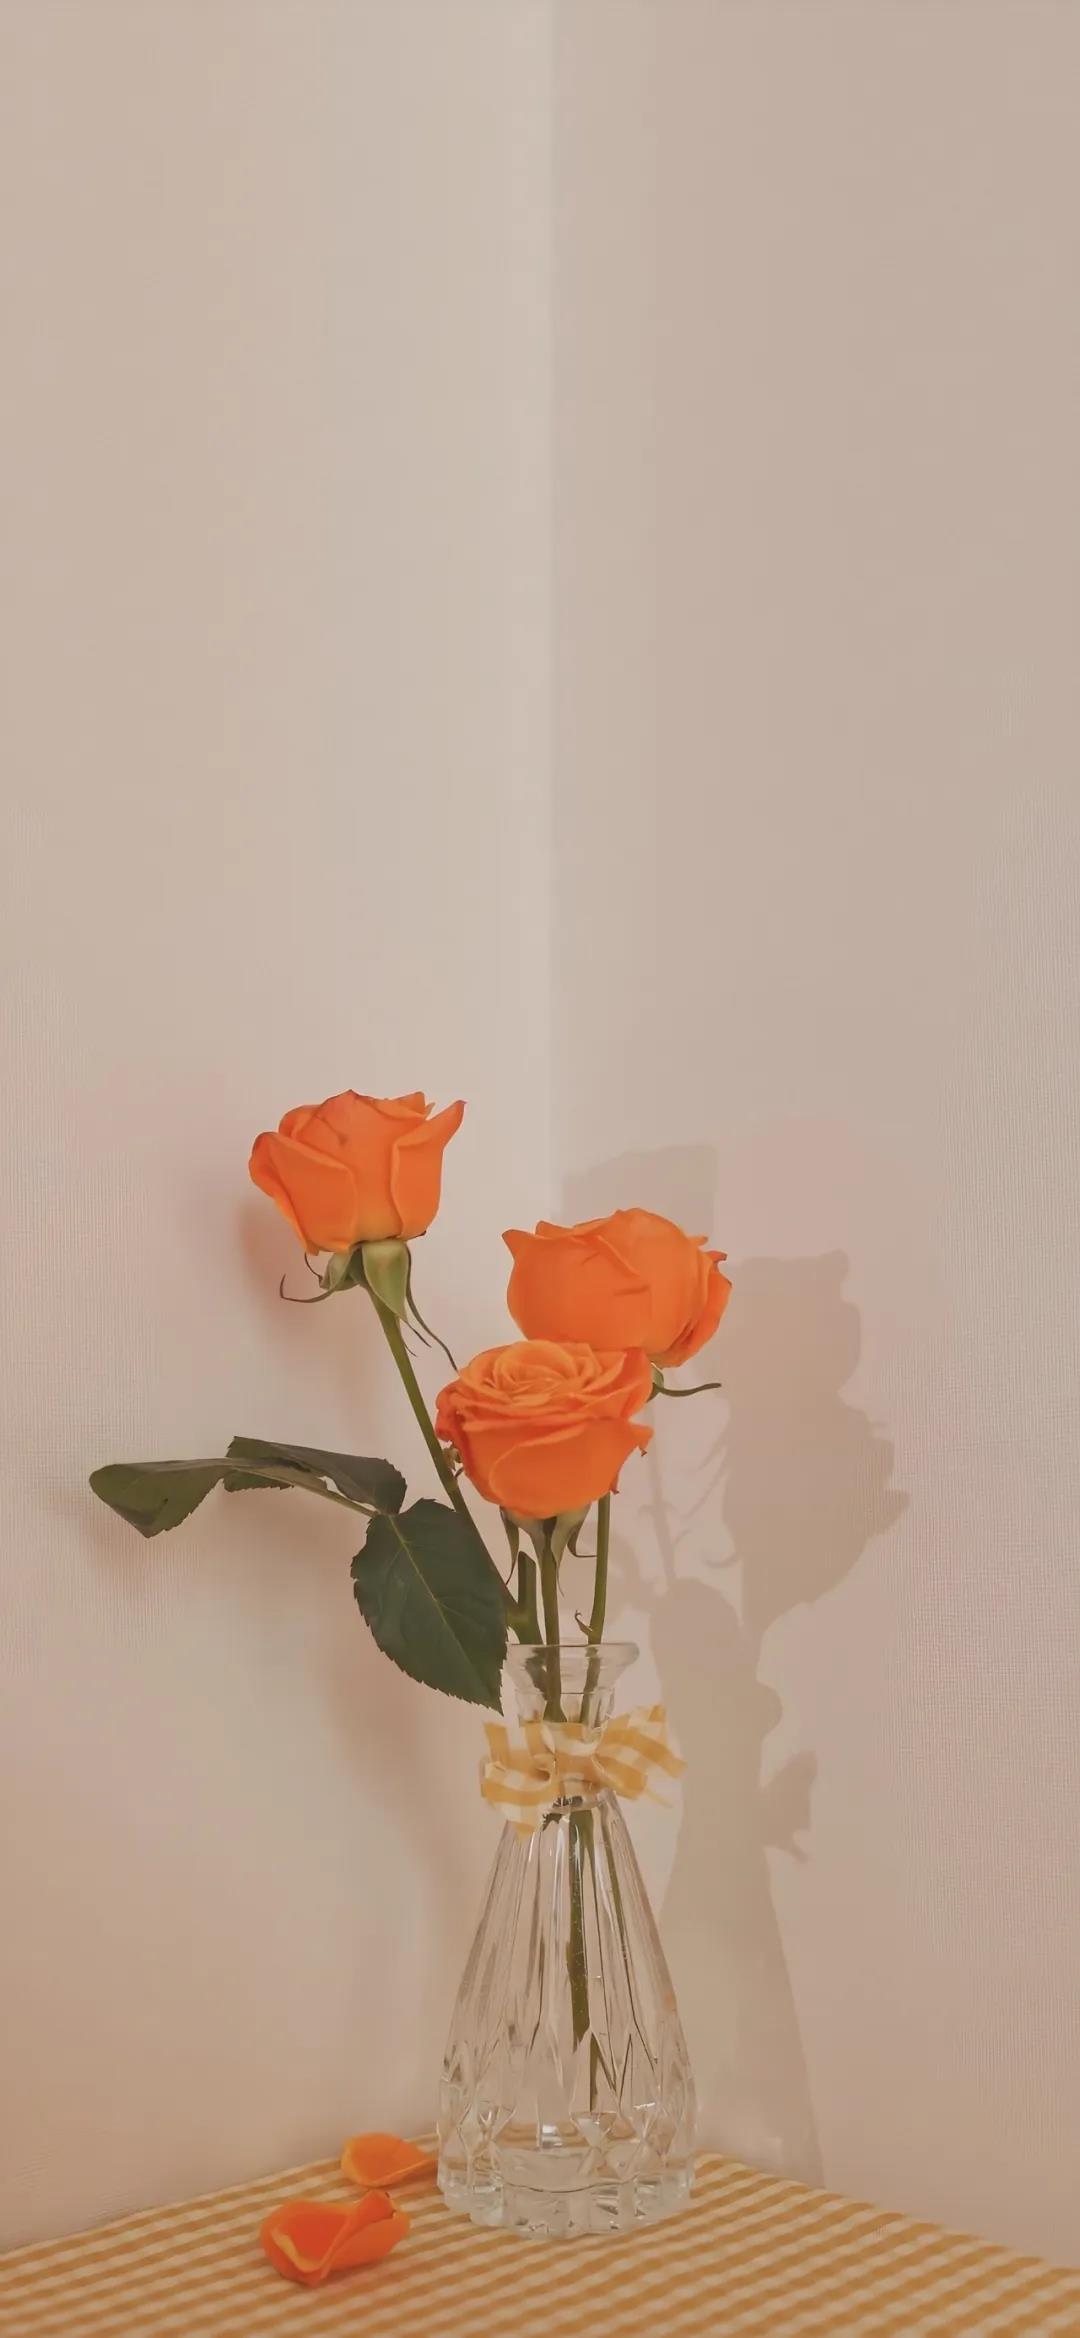 禁锢自由的美丽透明花瓶里的花唯美壁纸图片